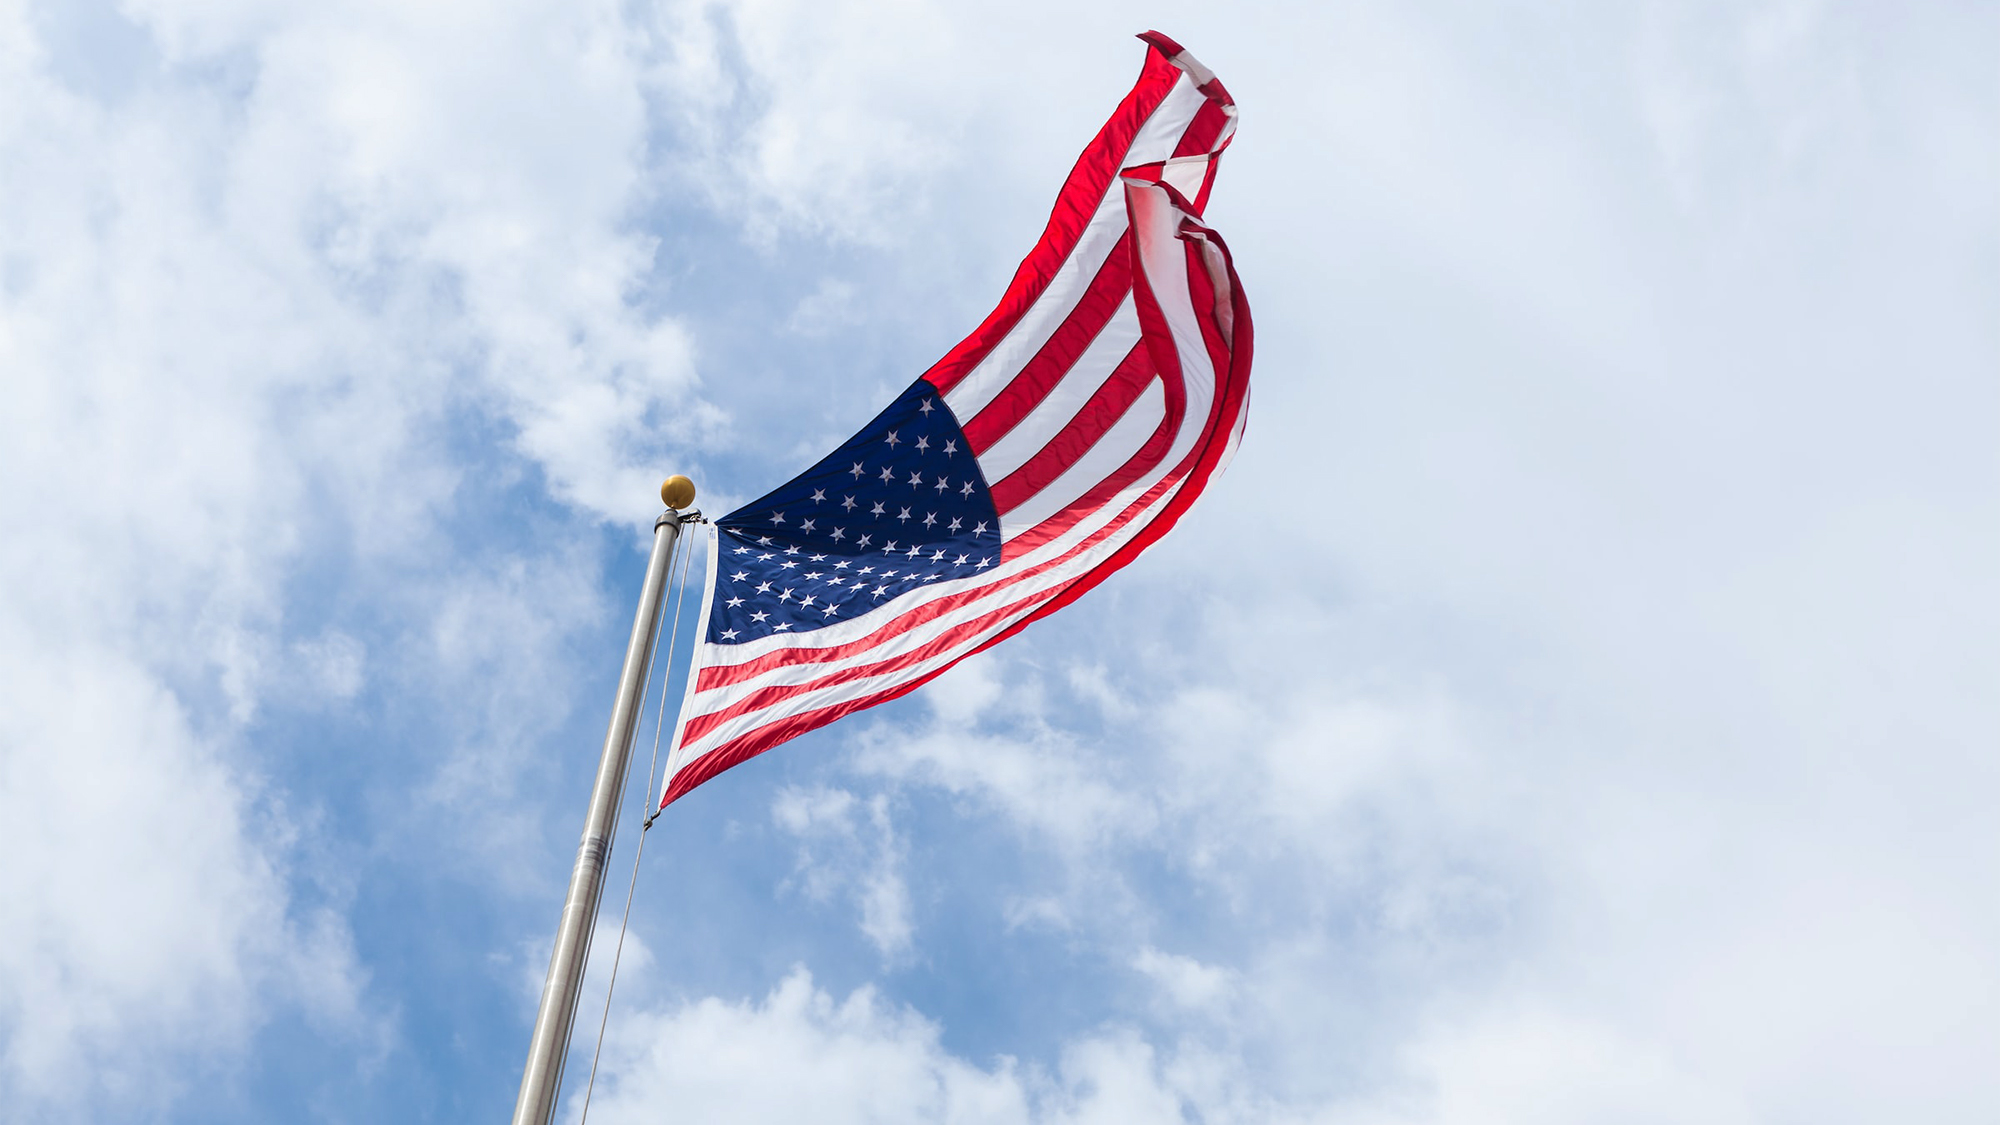 American flag on a pole against a blue sky